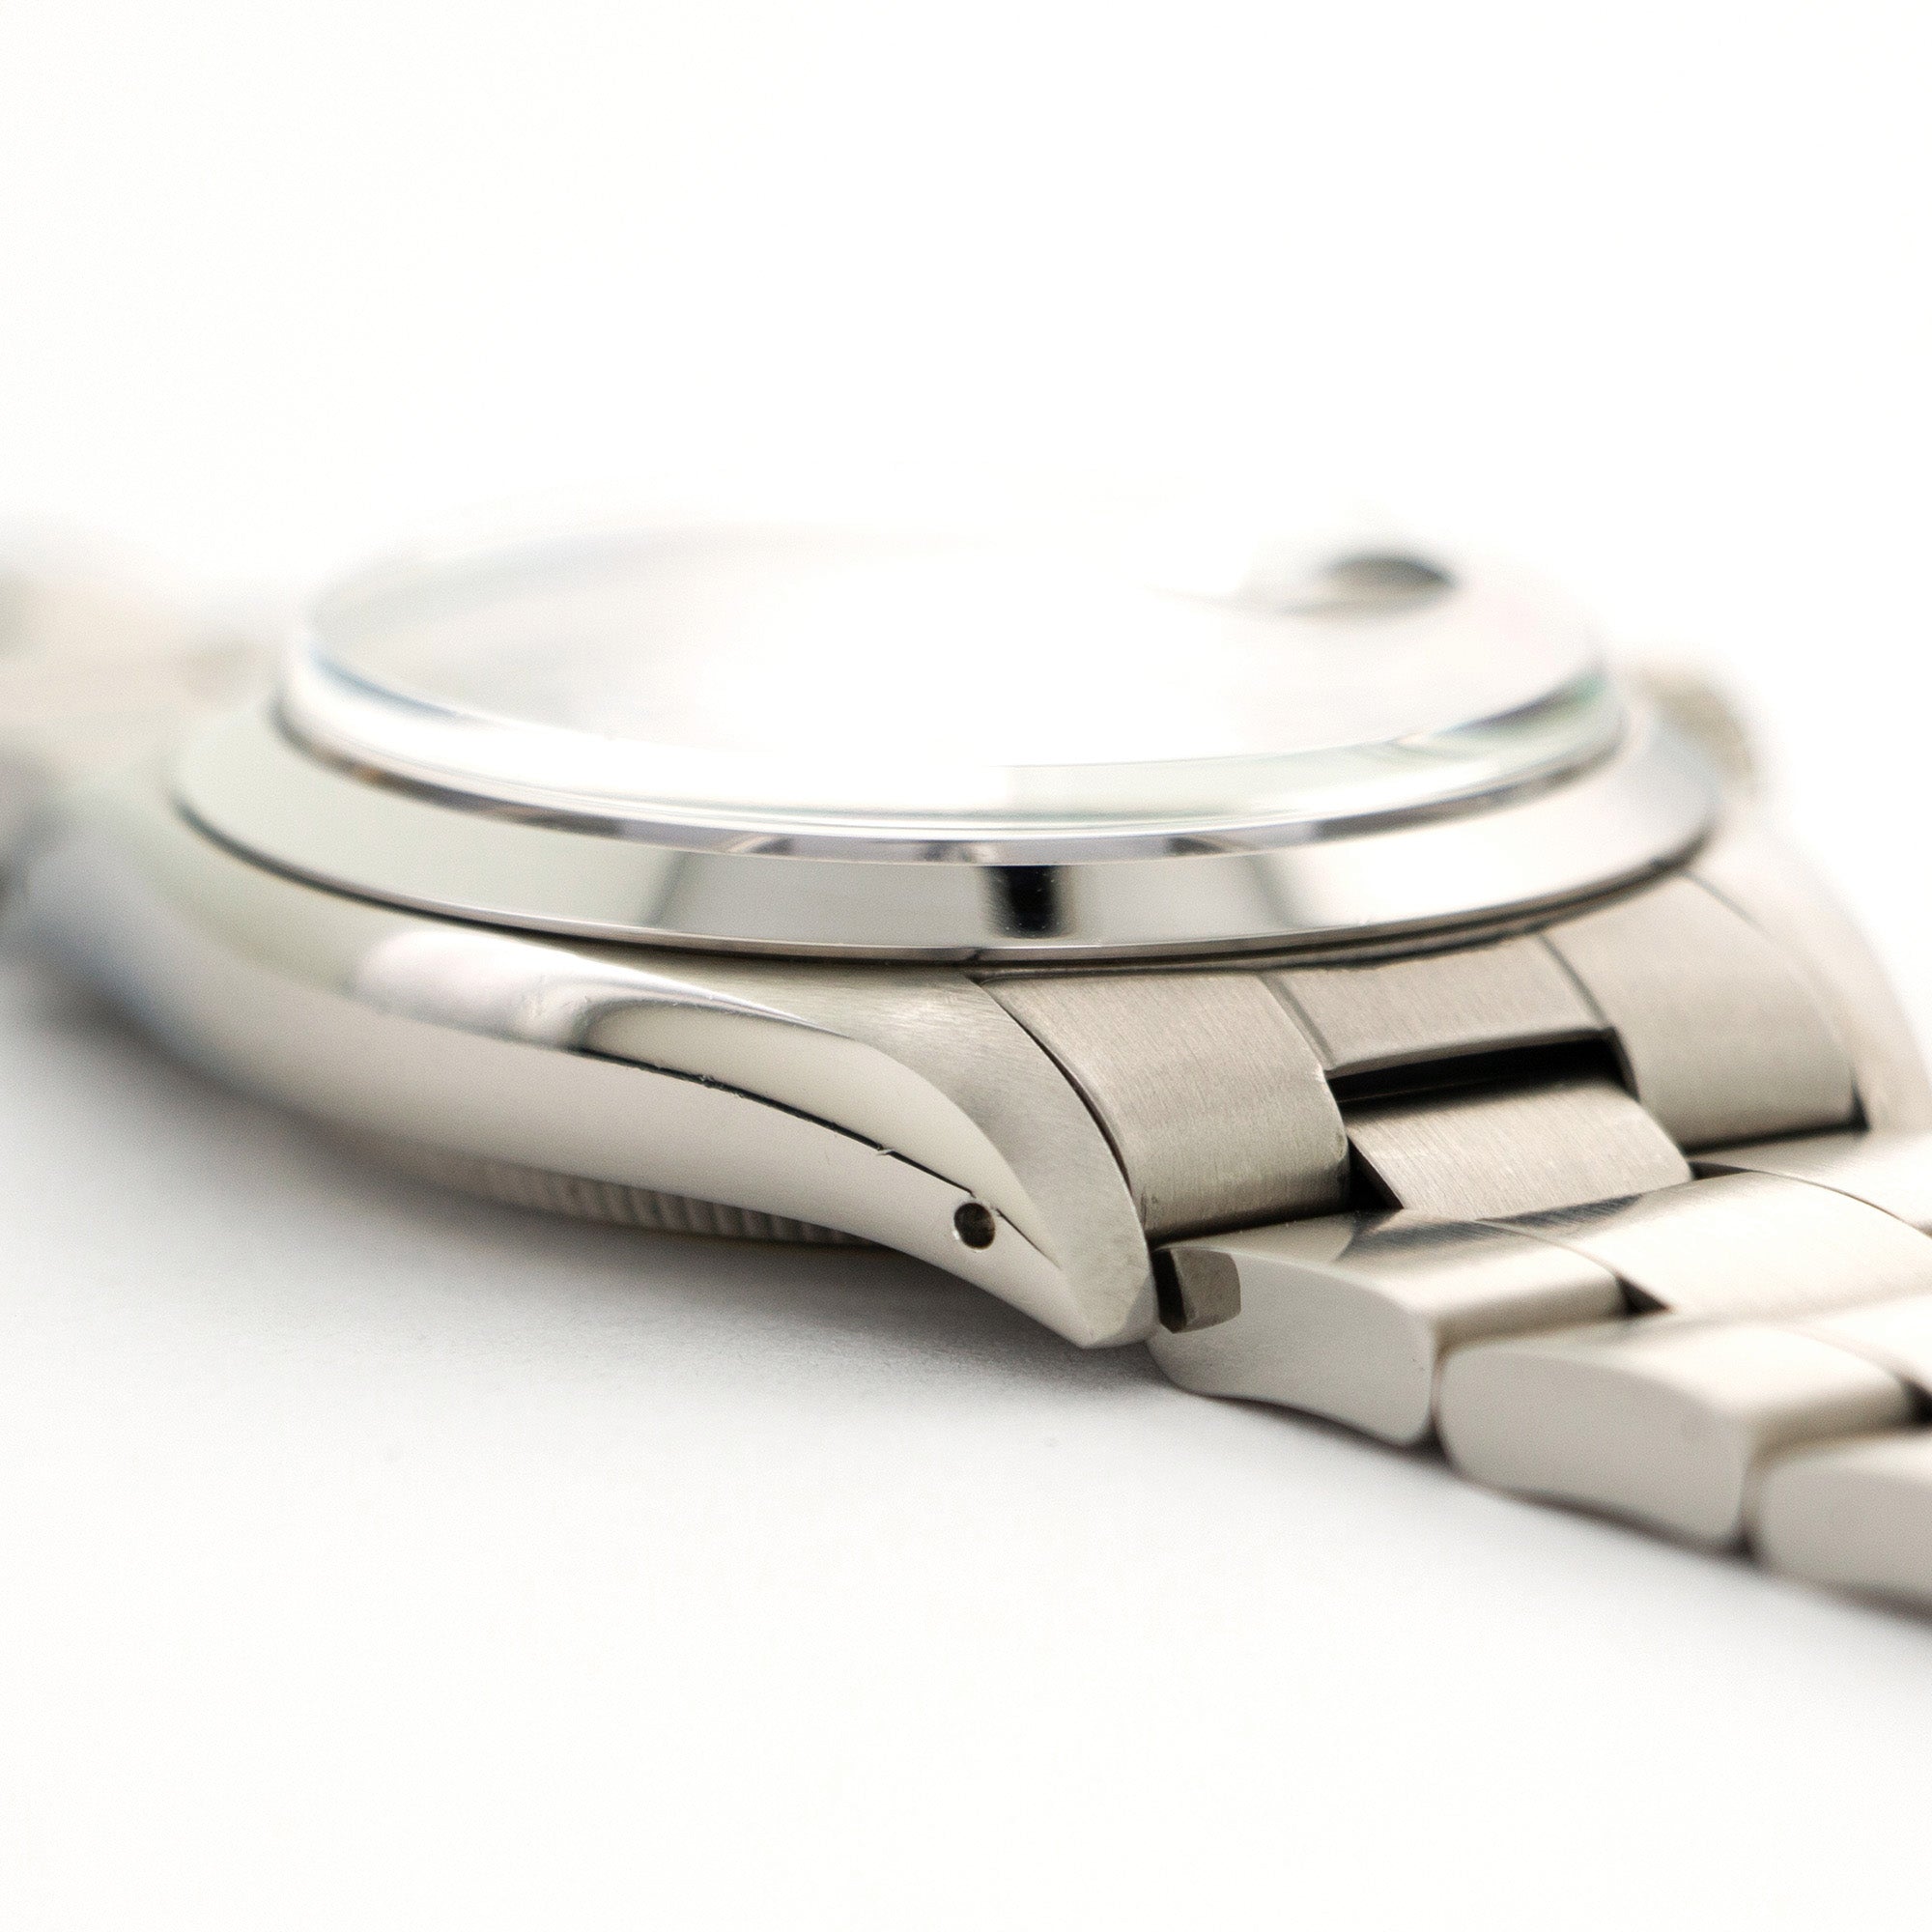 Rolex - Rolex Steel Date Watch Ref. 1500, with Original Caseback Sticker - The Keystone Watches